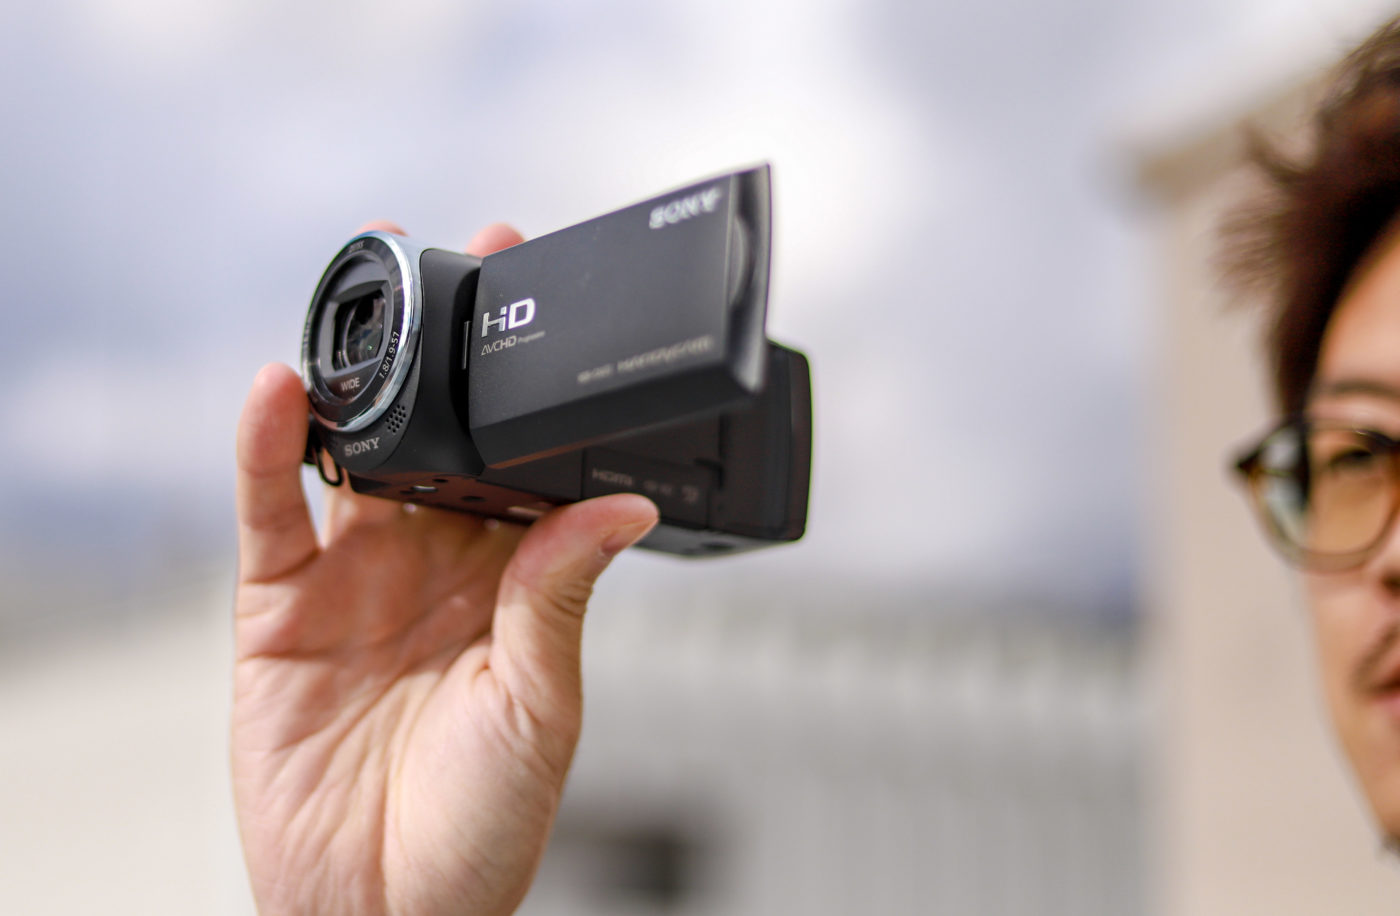 手のひらサイズの超軽量ビデオカメラSONY HDR-CX470を実写レビュー | Picky's